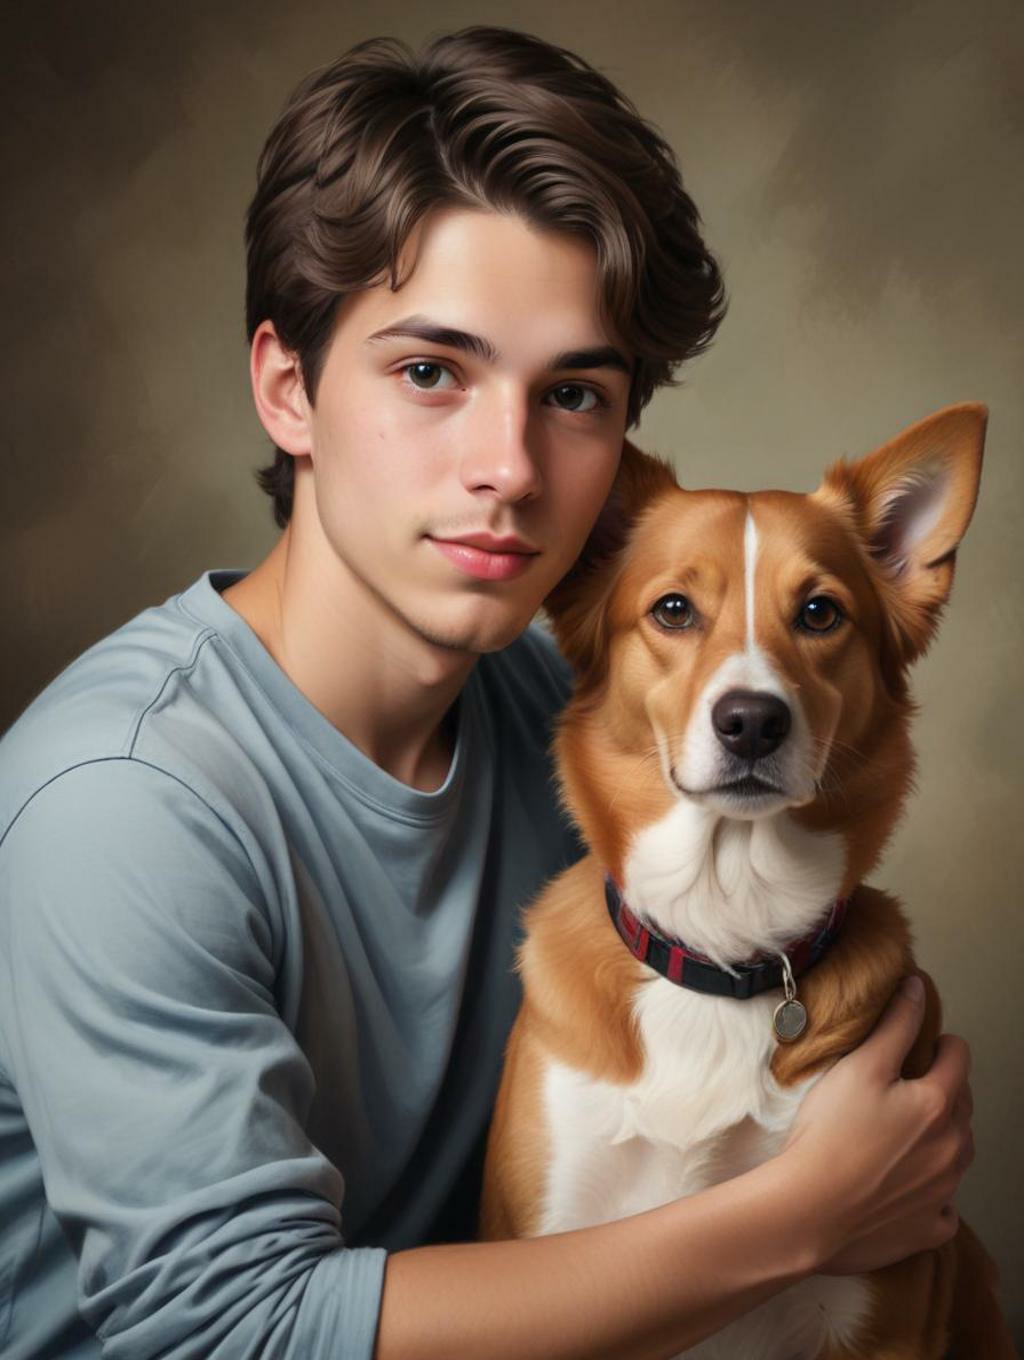 Pet Portraits Men: Gallery Frames & Self-Portraits-Theme:2